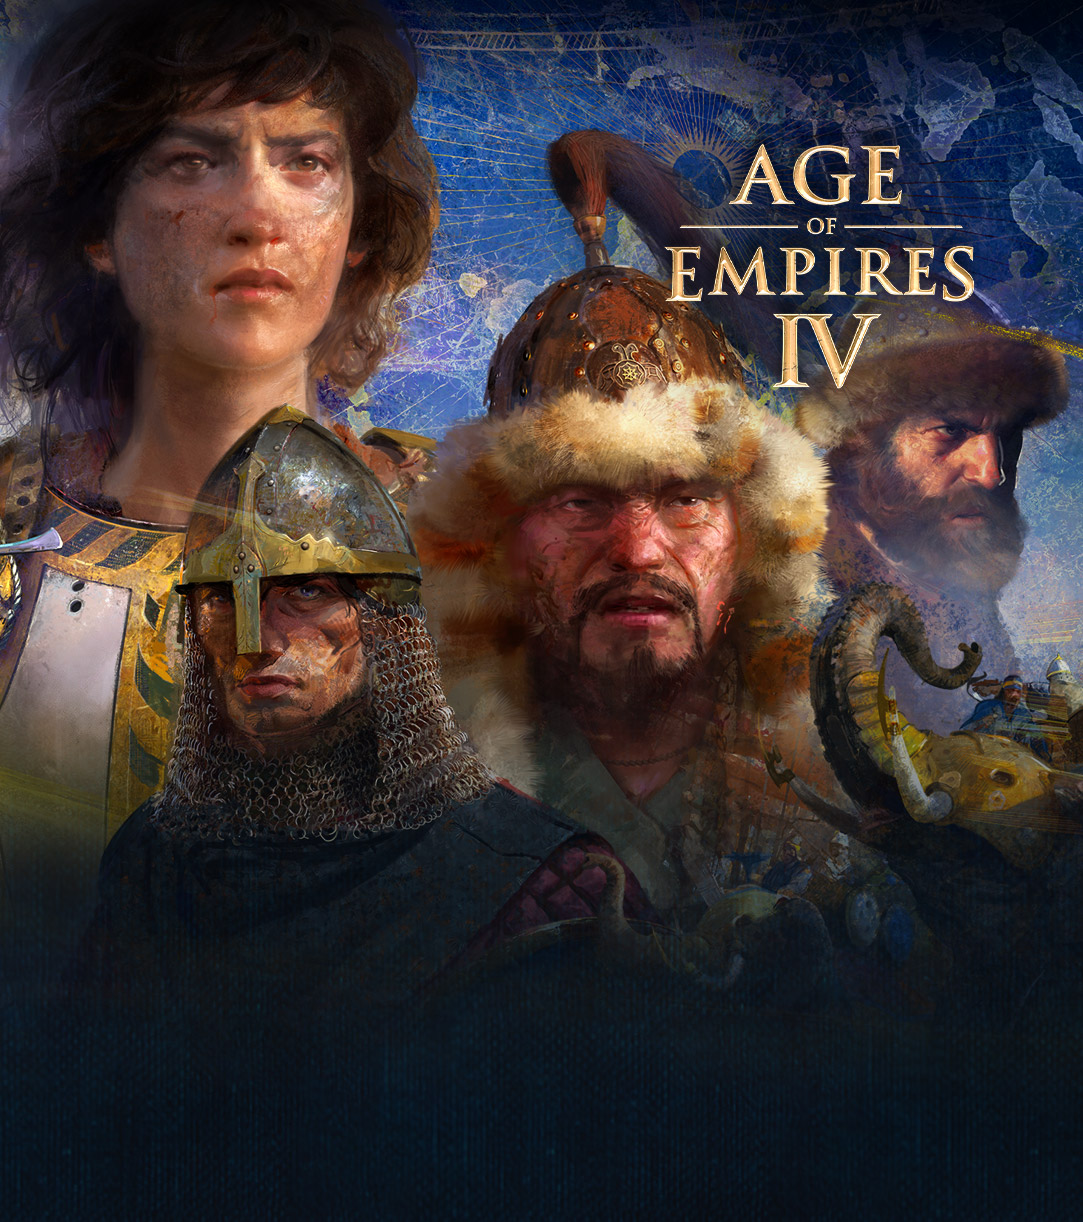 Age of Empires IV. Fire karakterer med scener av krig, elefanter og menn på hester rundt dem på en kartbakgrunn